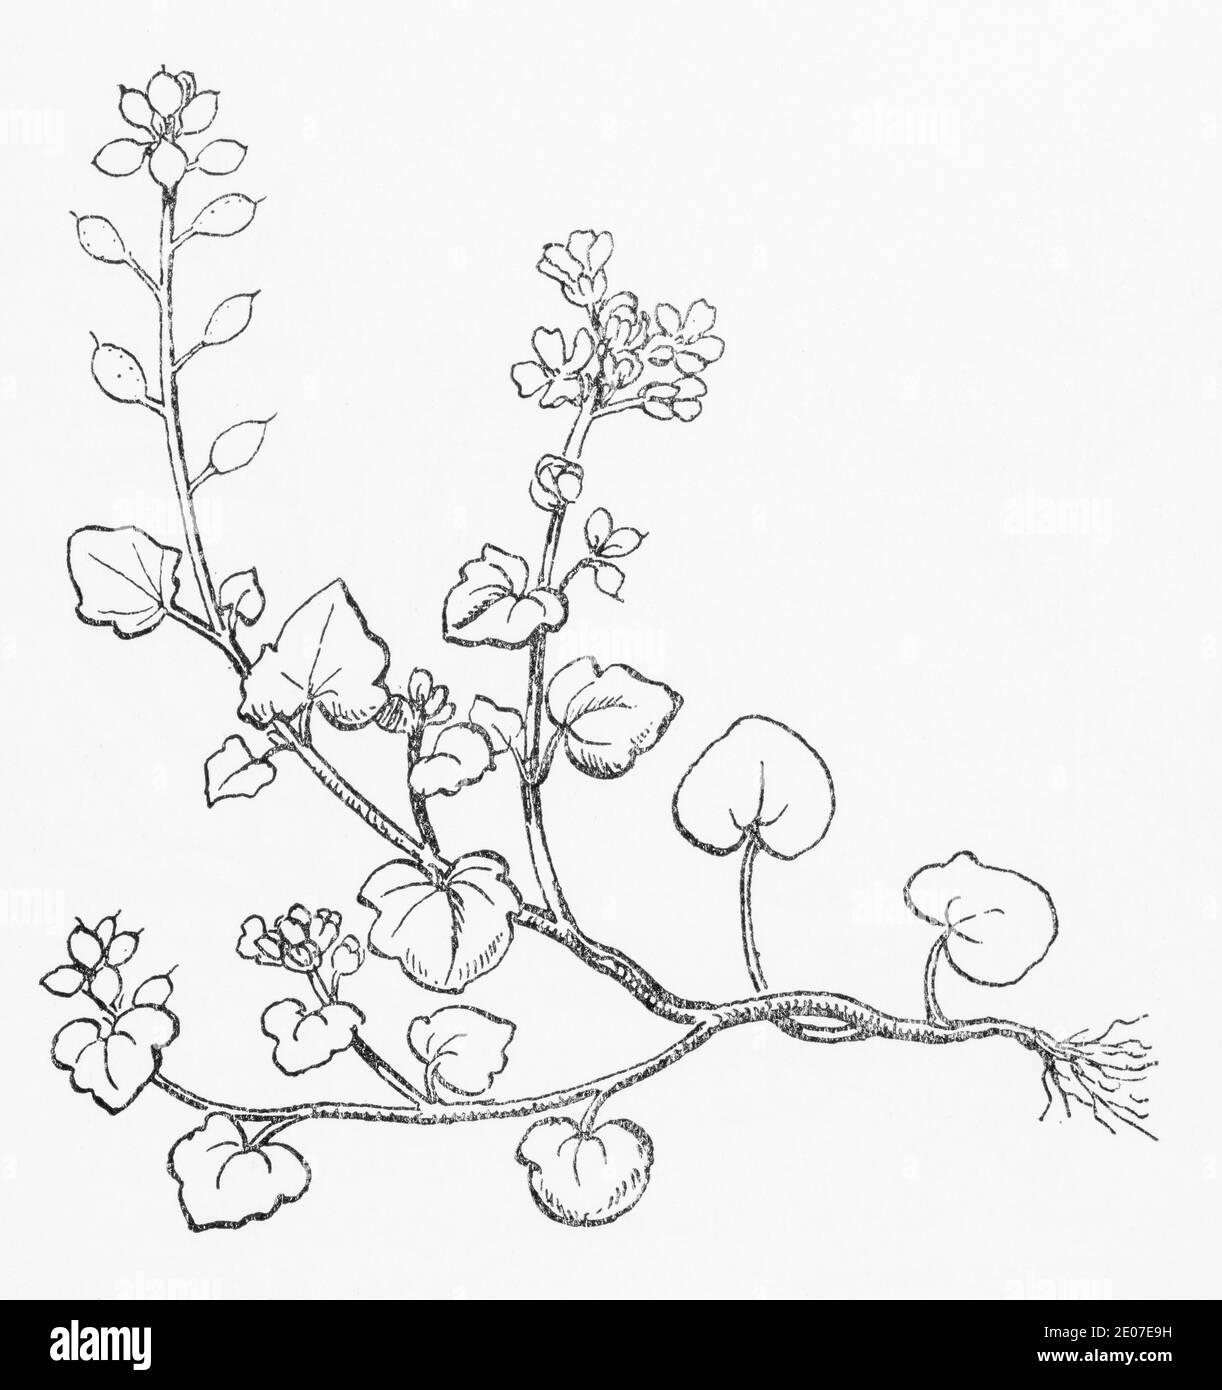 Ancienne gravure d'illustration botanique de Triangular-feuille Scurvy Grass / Cochlearia danica. Plante médicinale traditionnelle. Voir Remarques Banque D'Images